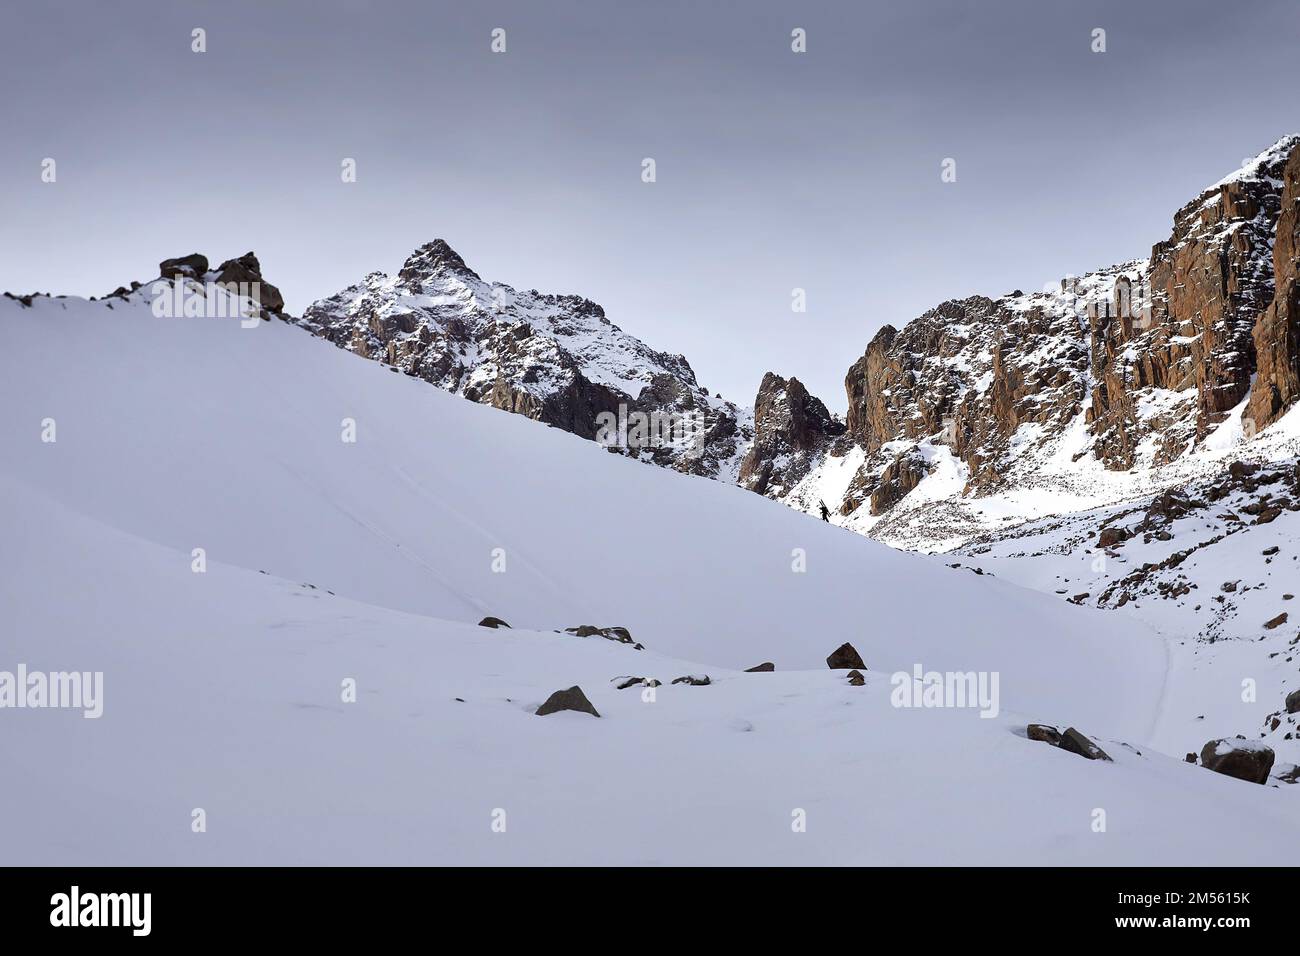 Skieur grimpant avec sac à dos et son ski dans les hautes montagnes enneigées et les pics rocheux. Sport en plein air en hiver. Banque D'Images